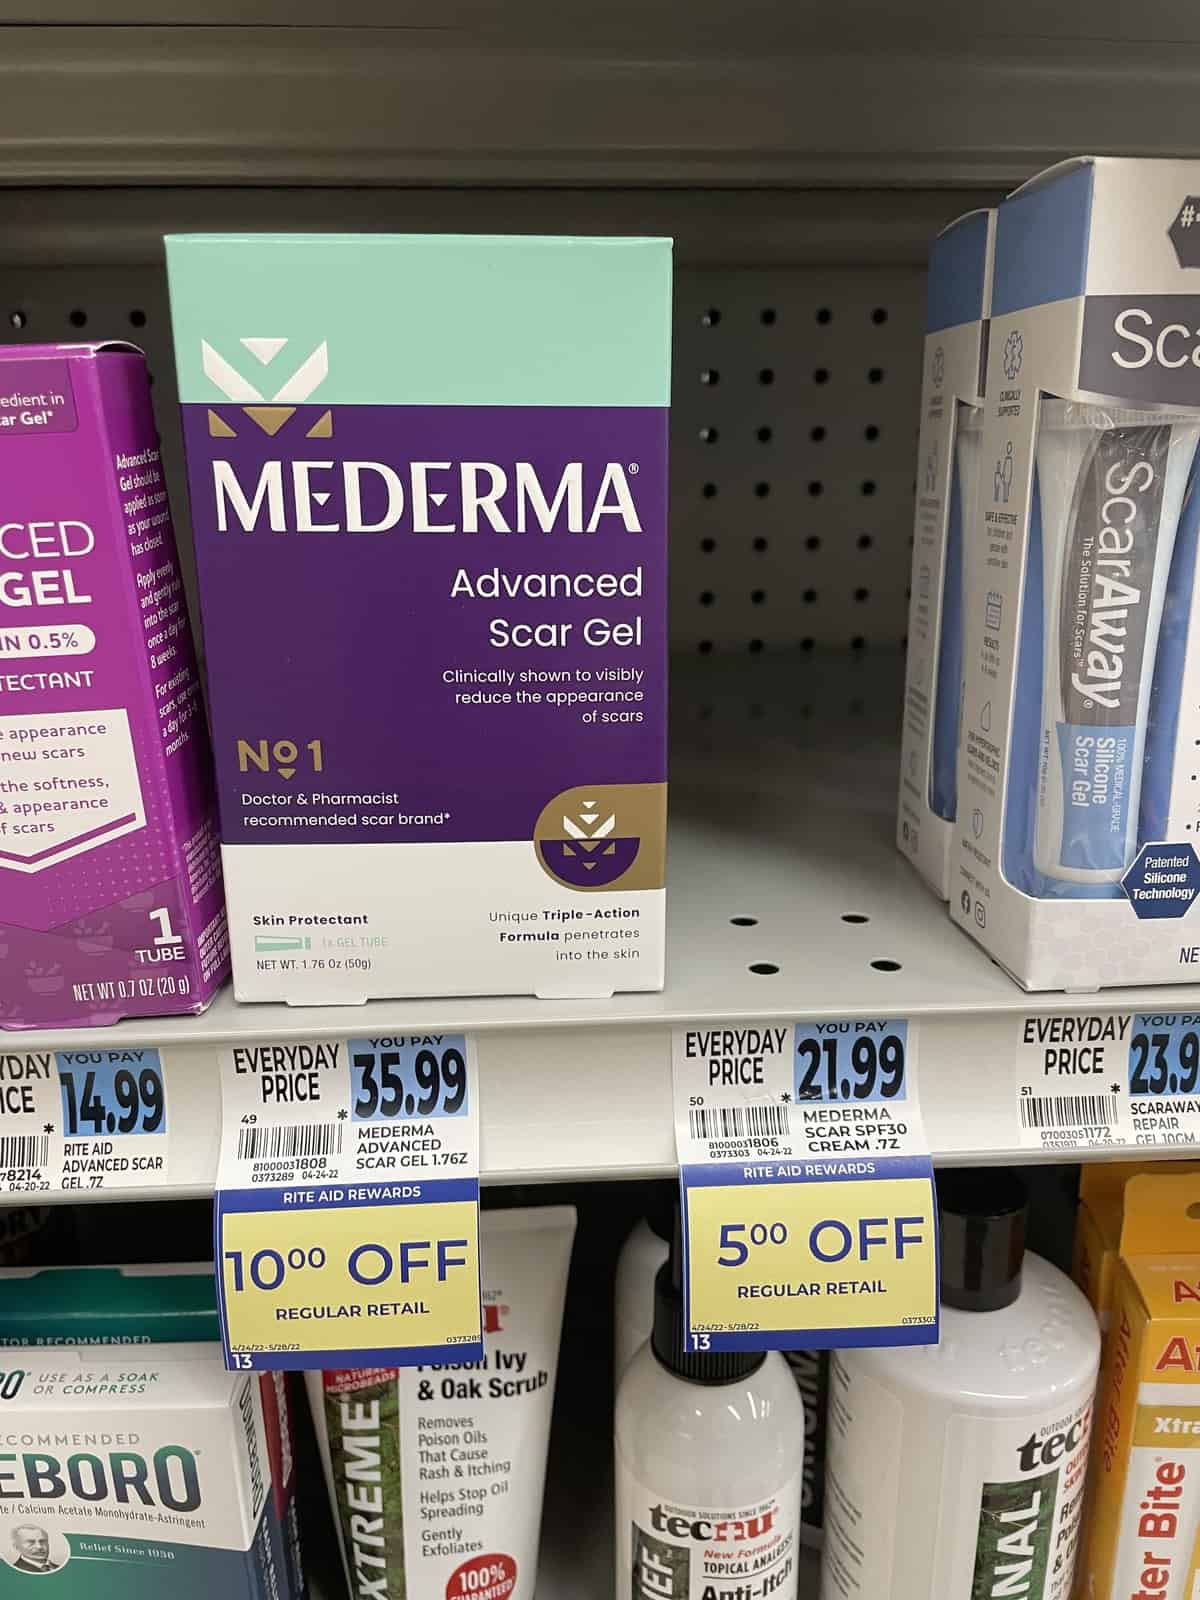 Rite Aid: Mederma Advanced Scar Gel ONLY $8.99 Through 5/21